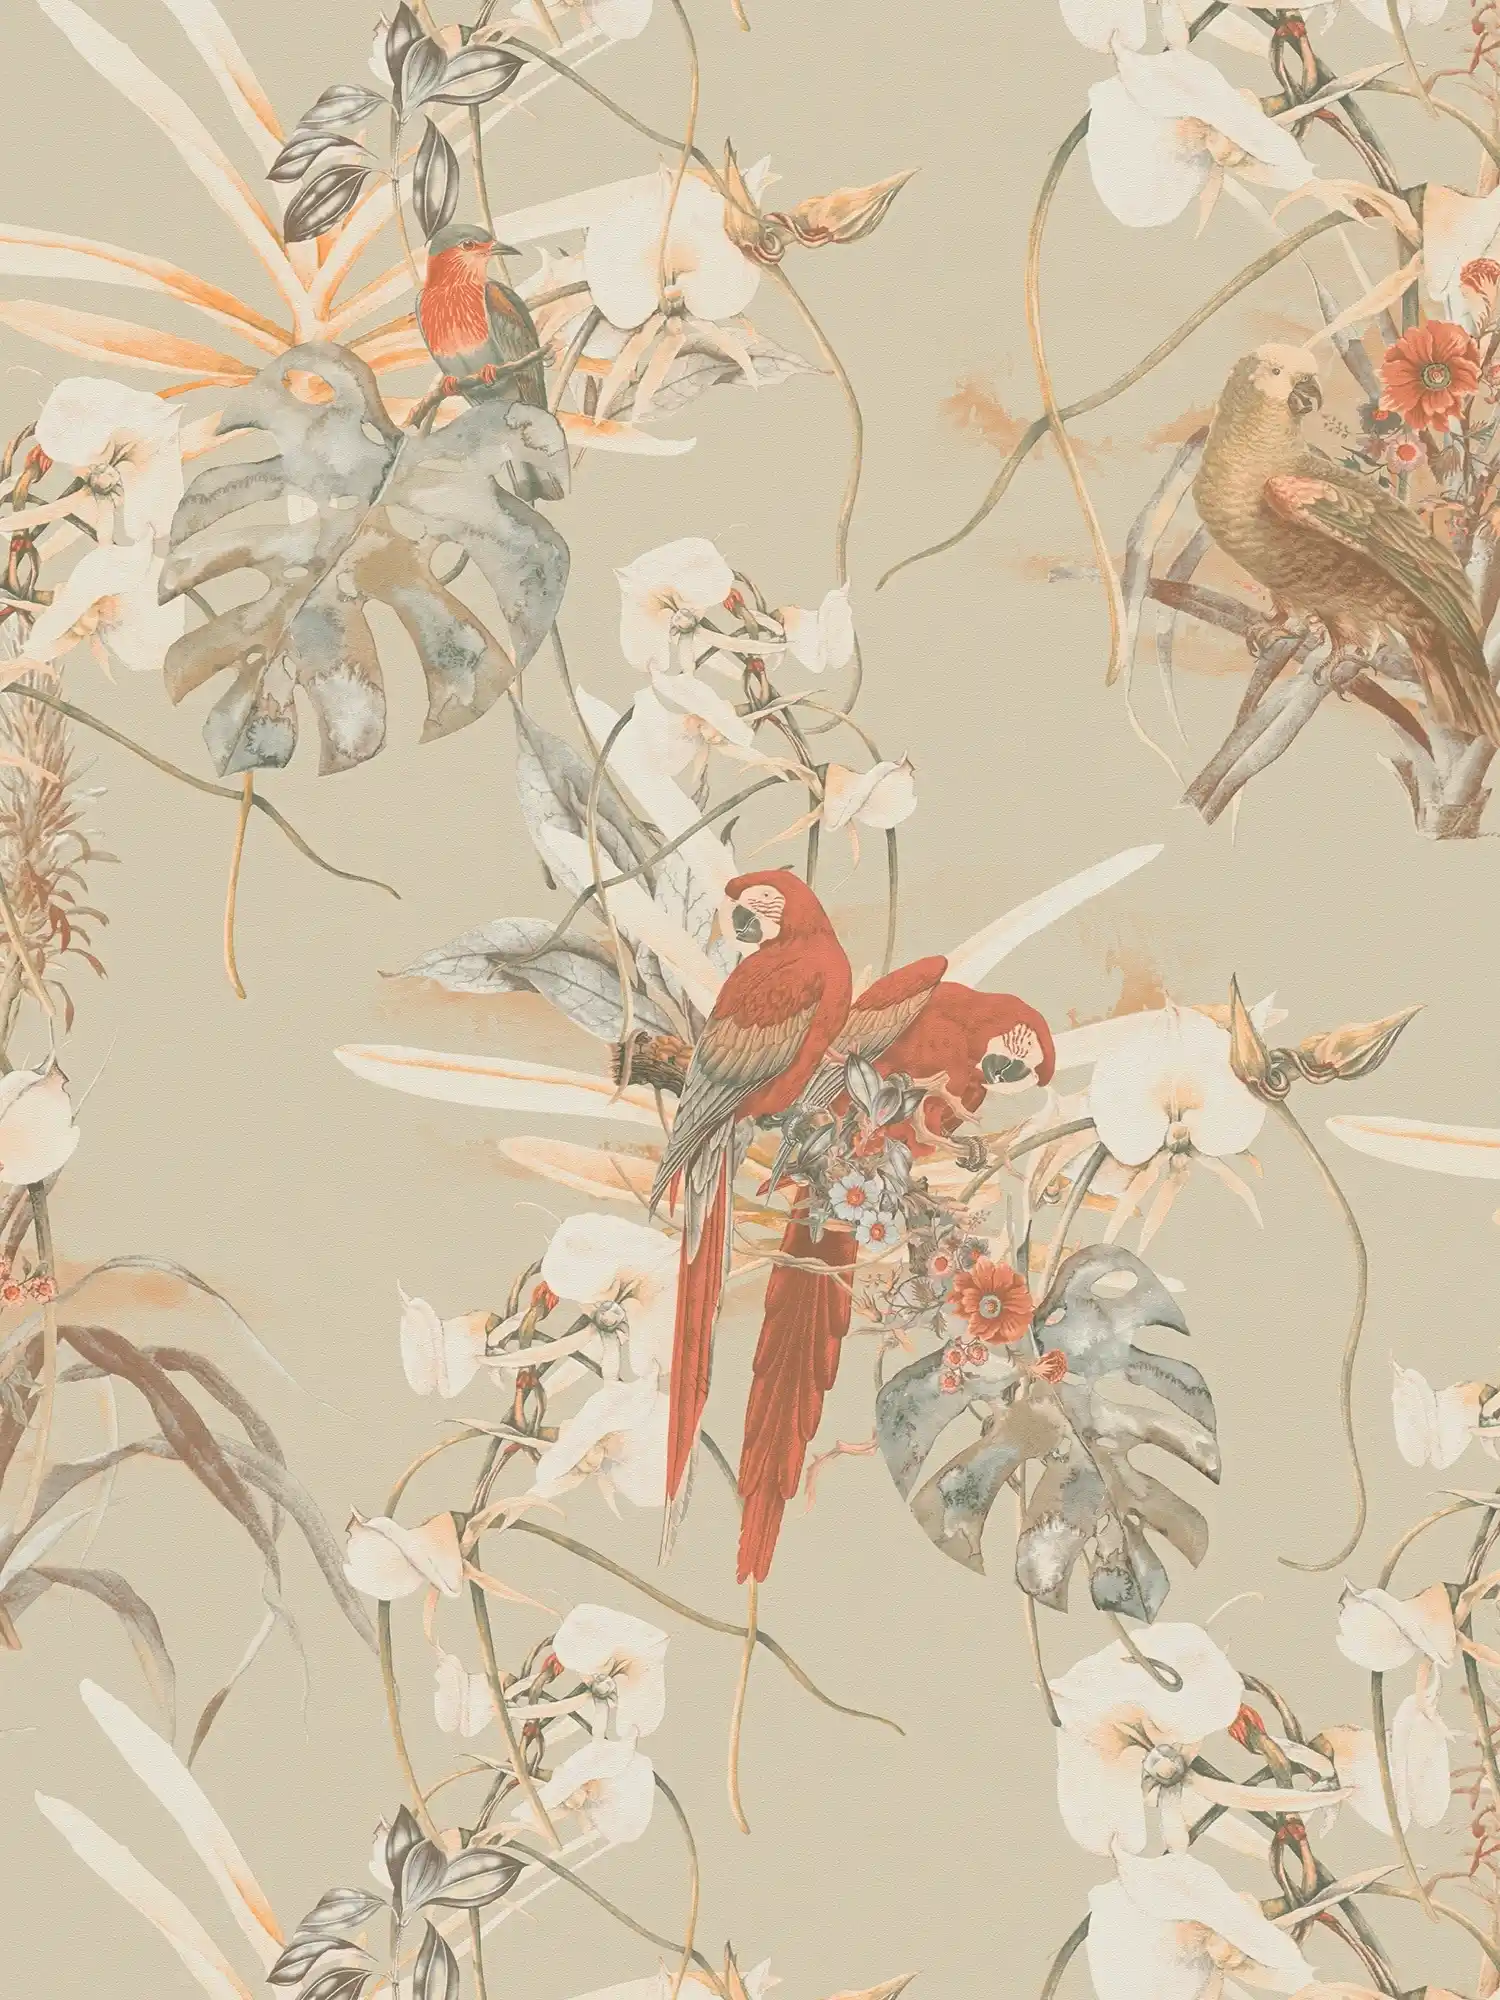 Papier peint design tropical, perroquet & fleurs exotiques - beige, marron
